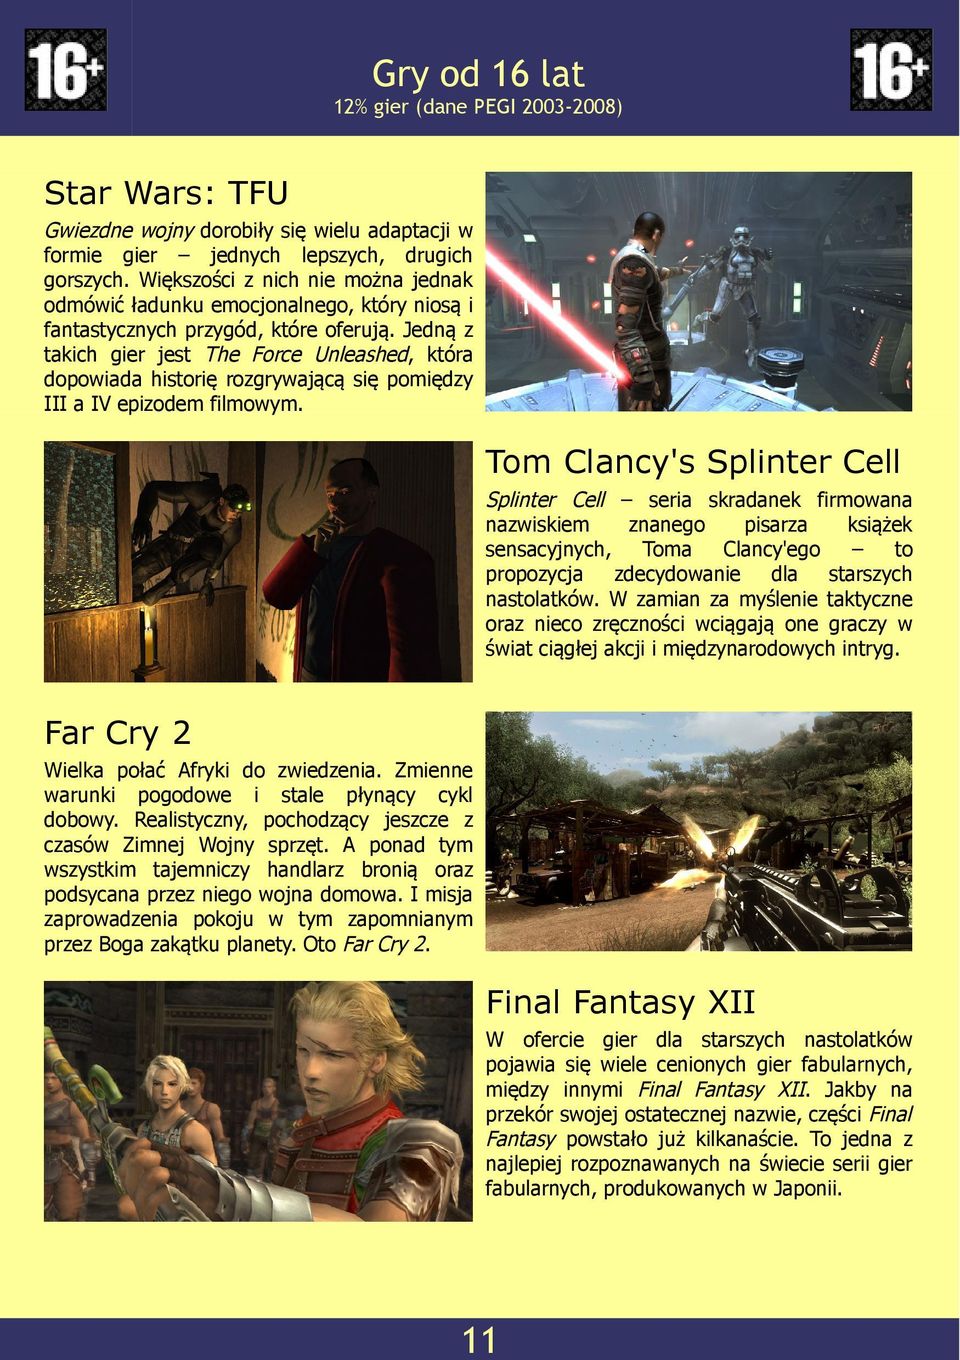 Jedną z takich gier jest The Force Unleashed, która dopowiada historię rozgrywającą się pomiędzy III a IV epizodem filmowym.